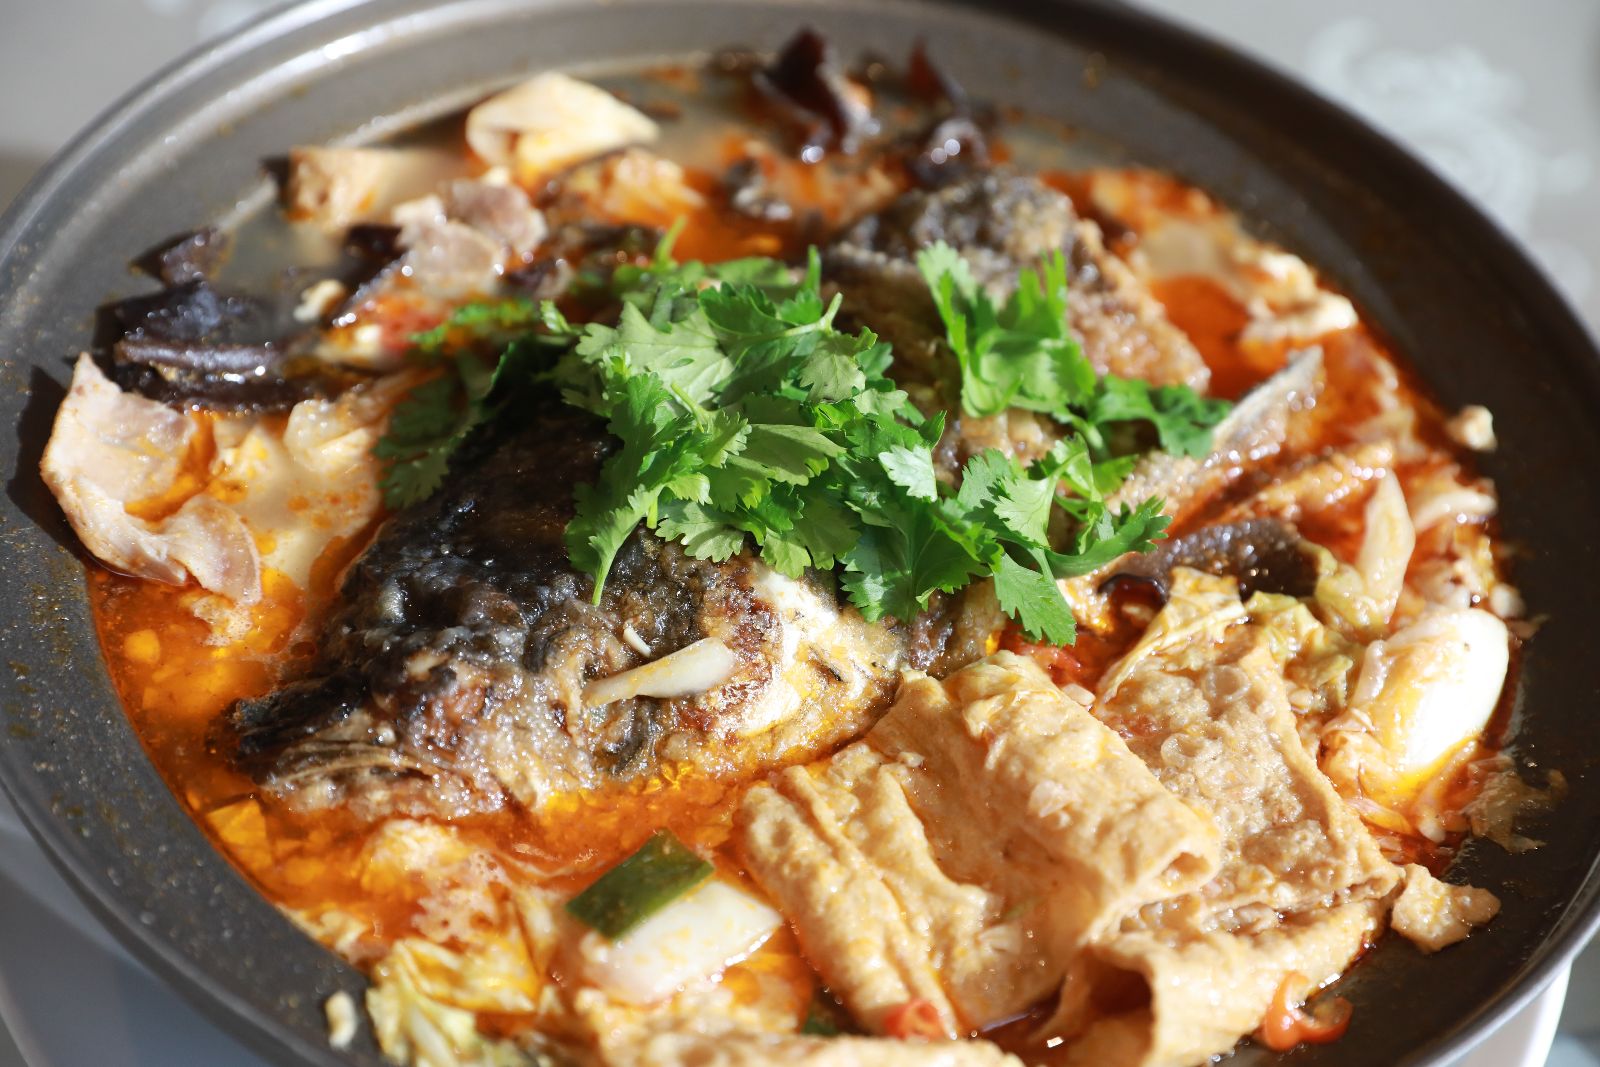 林聰明沙鍋魚頭裡配料豐富，魚頭肉多且外皮酥脆， 湯頭富含濃郁的沙茶香氣